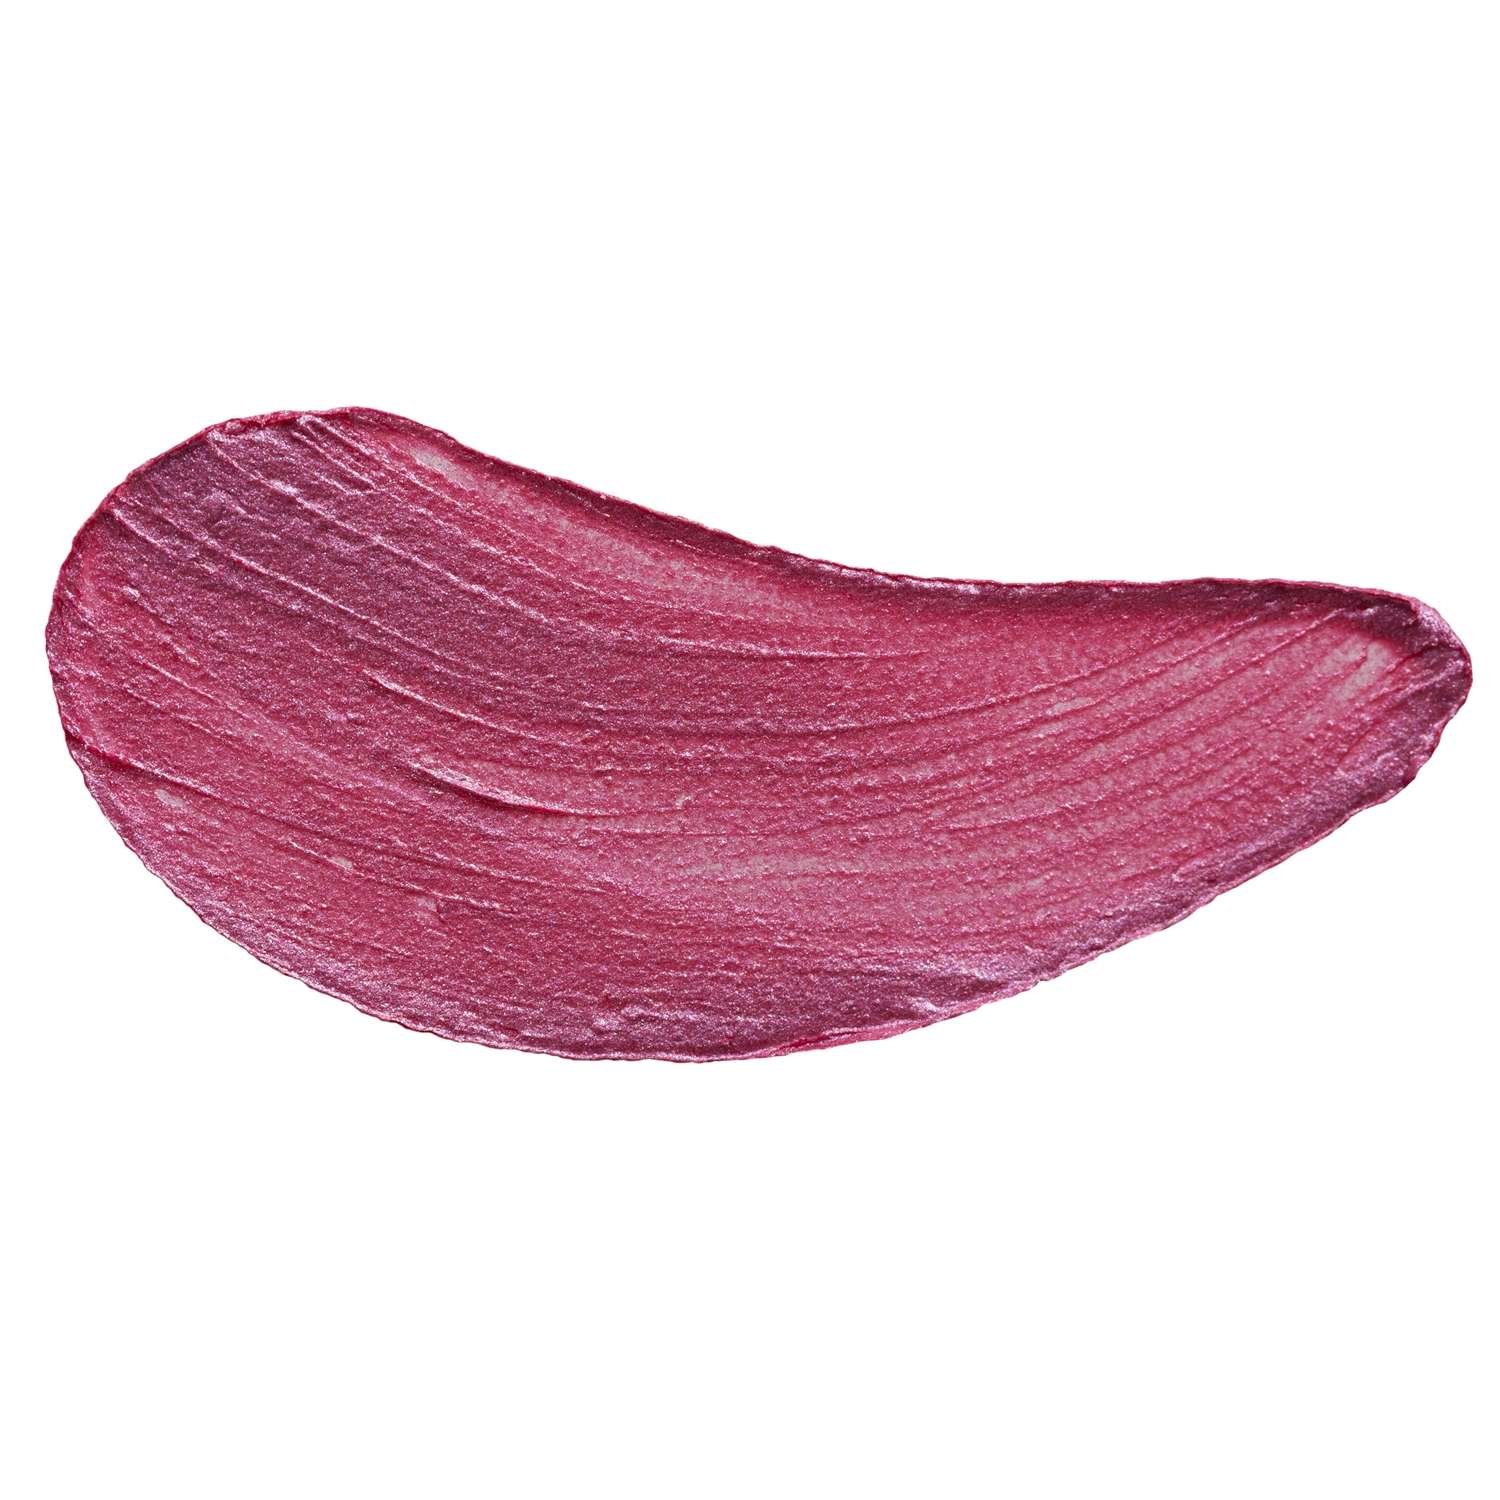 Помада для губ Parisa Cosmetics L-03 тон 17 Натурально-розовый перламутр - фото 2